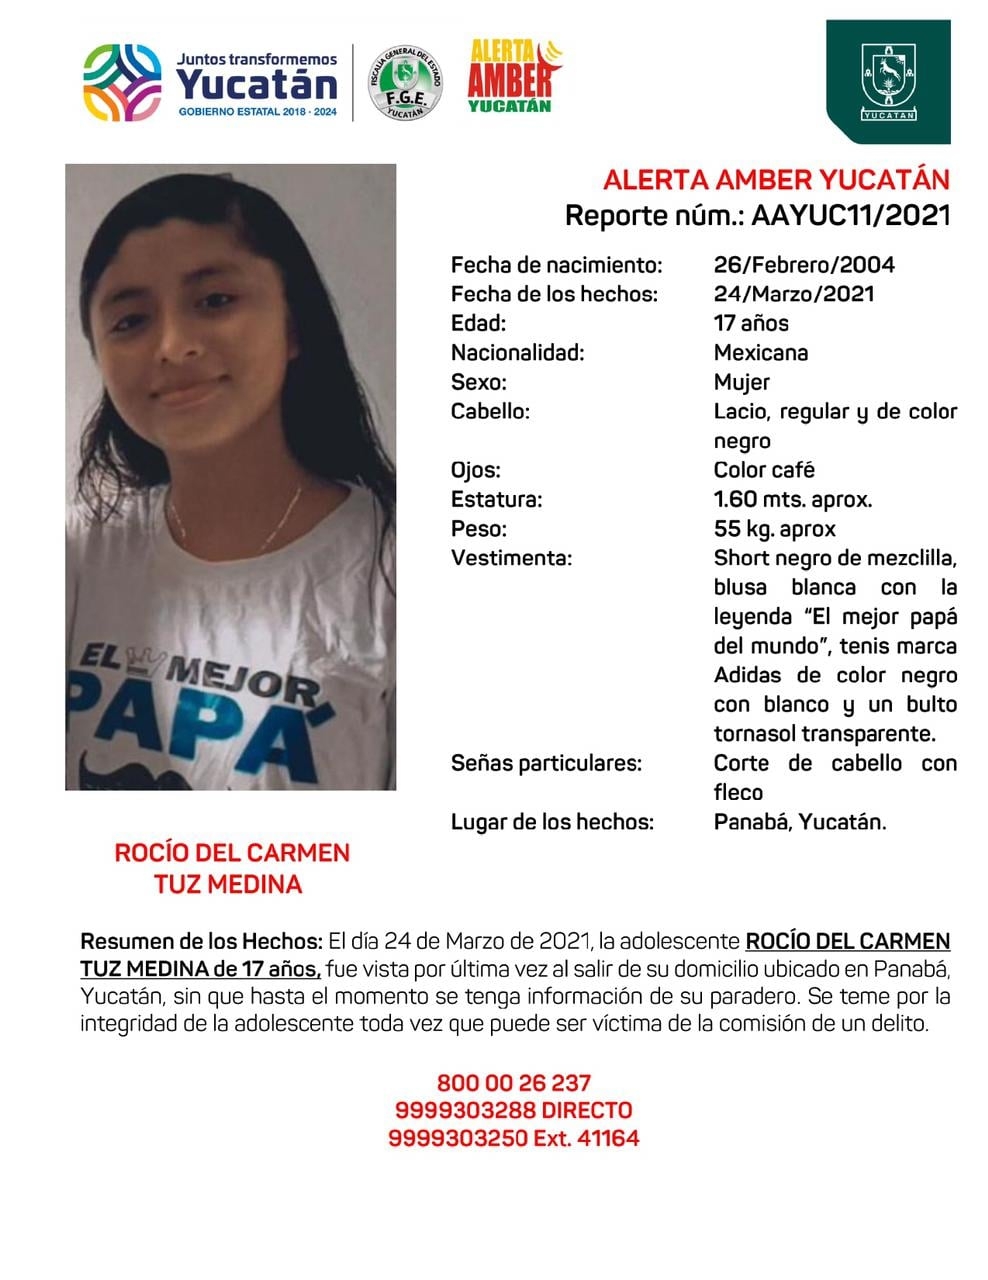 Desaparece una joven de 17 años en Yucatán; activan Alerta Amber